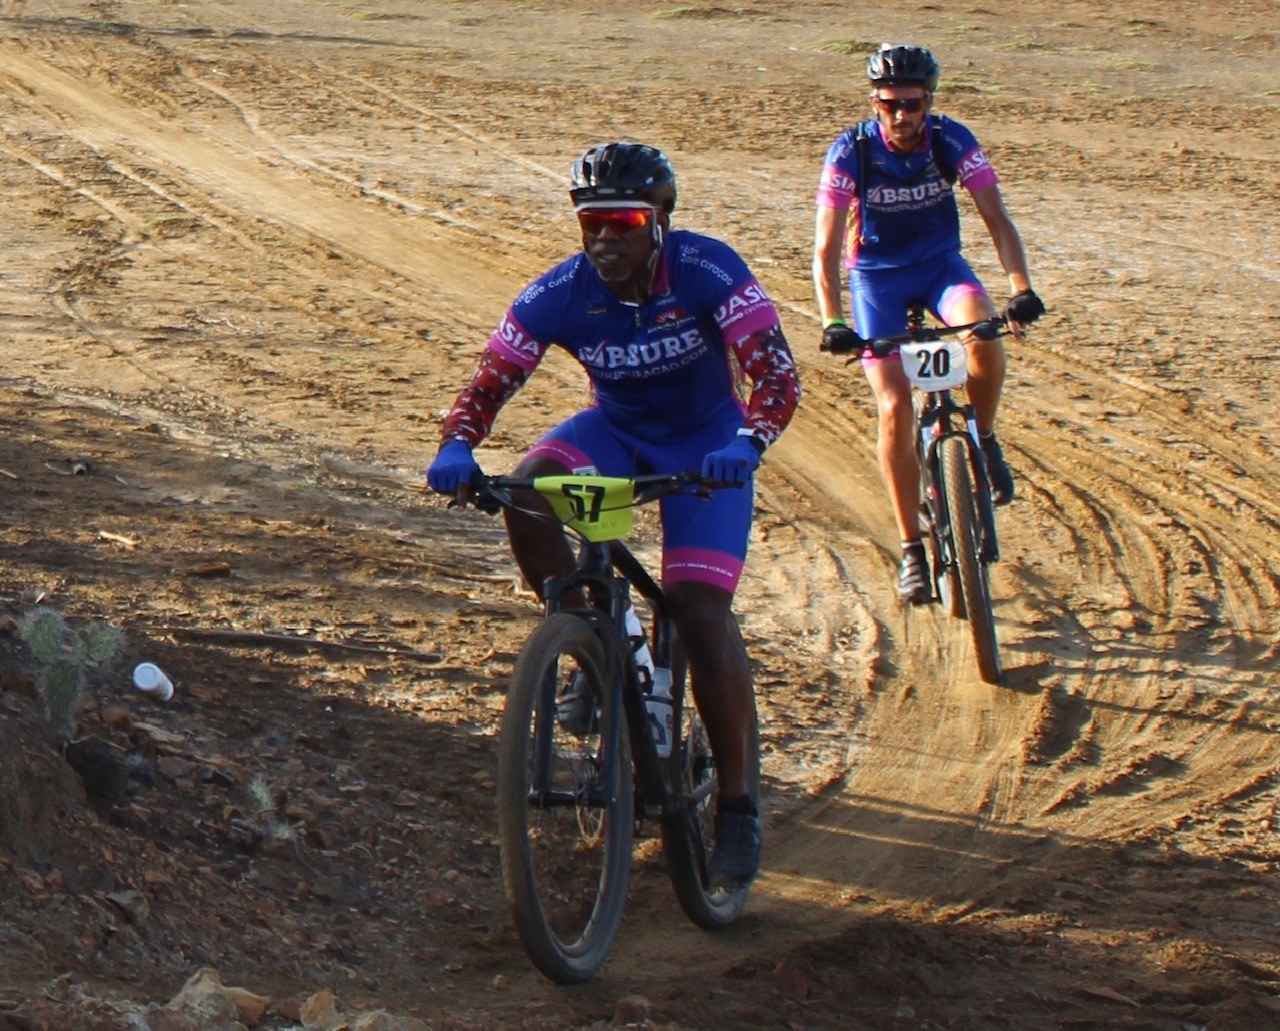 Nieuwe Duo Extreme Mountain bike race georganiseerd op Bonaire